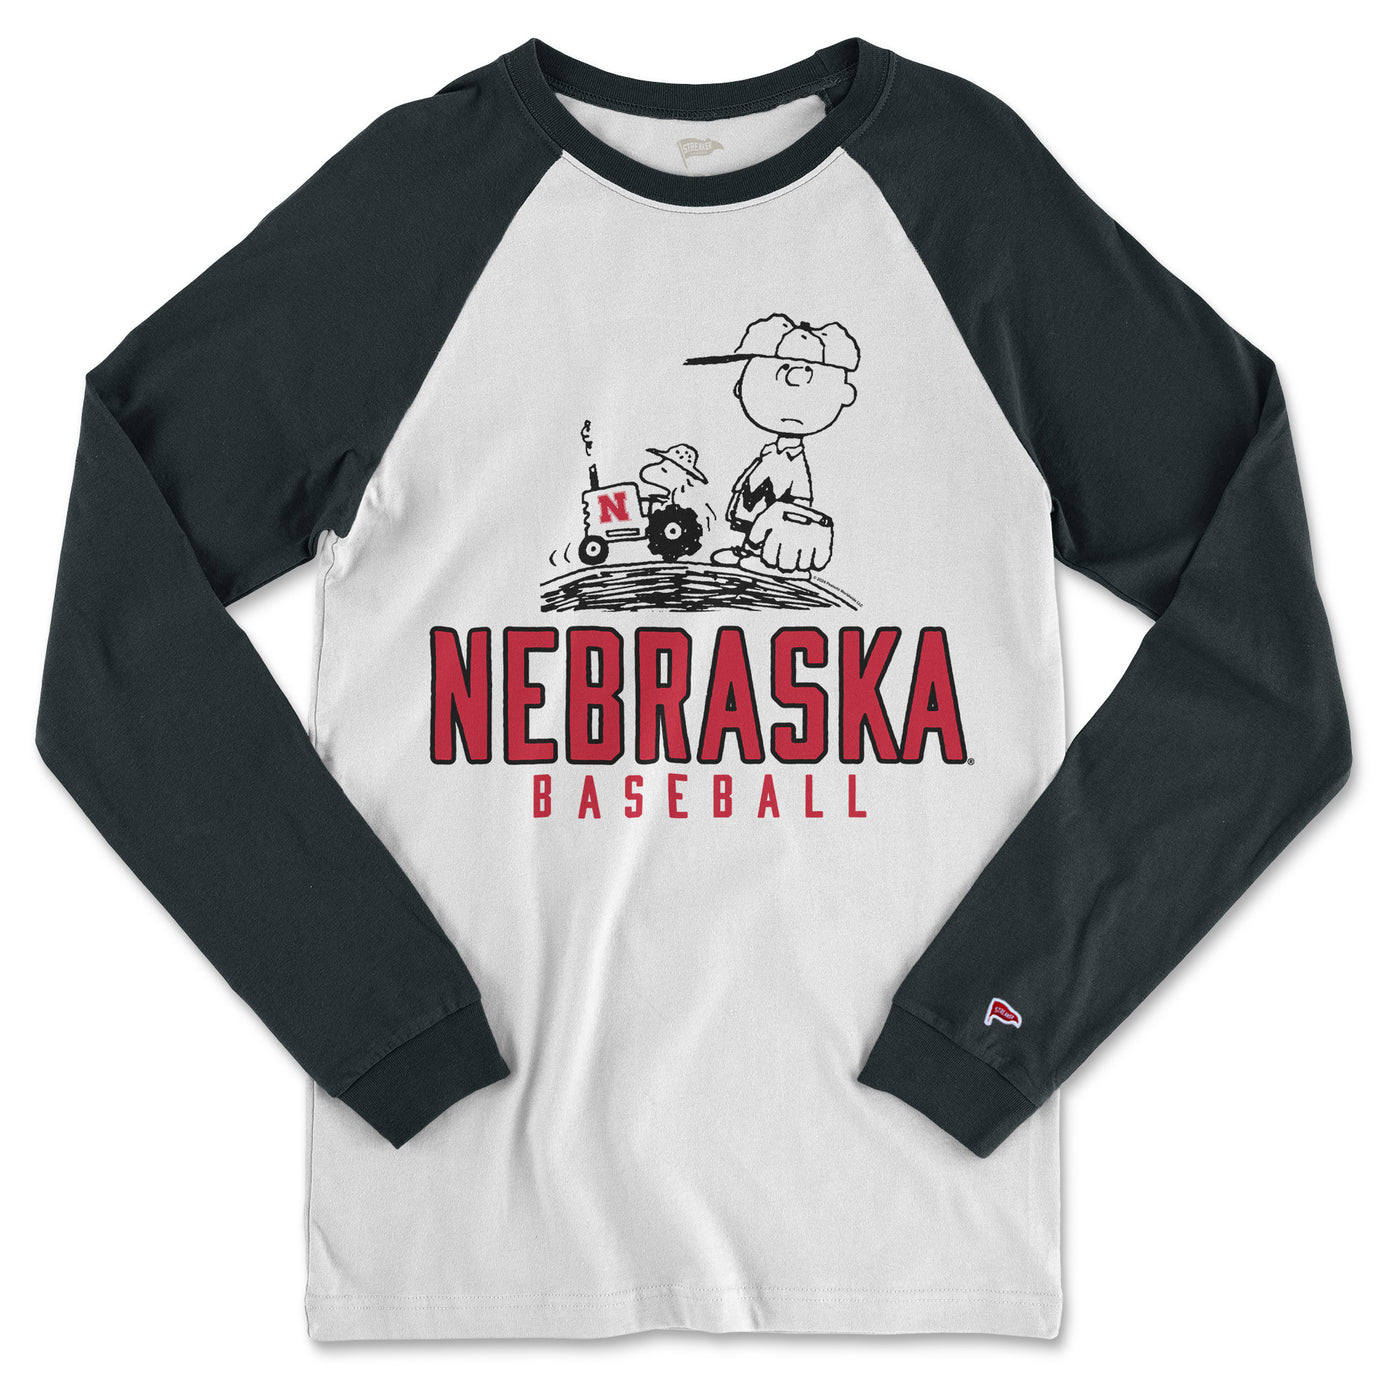 Peanuts x Nebraska Baseball Shirt - Streaker Sports